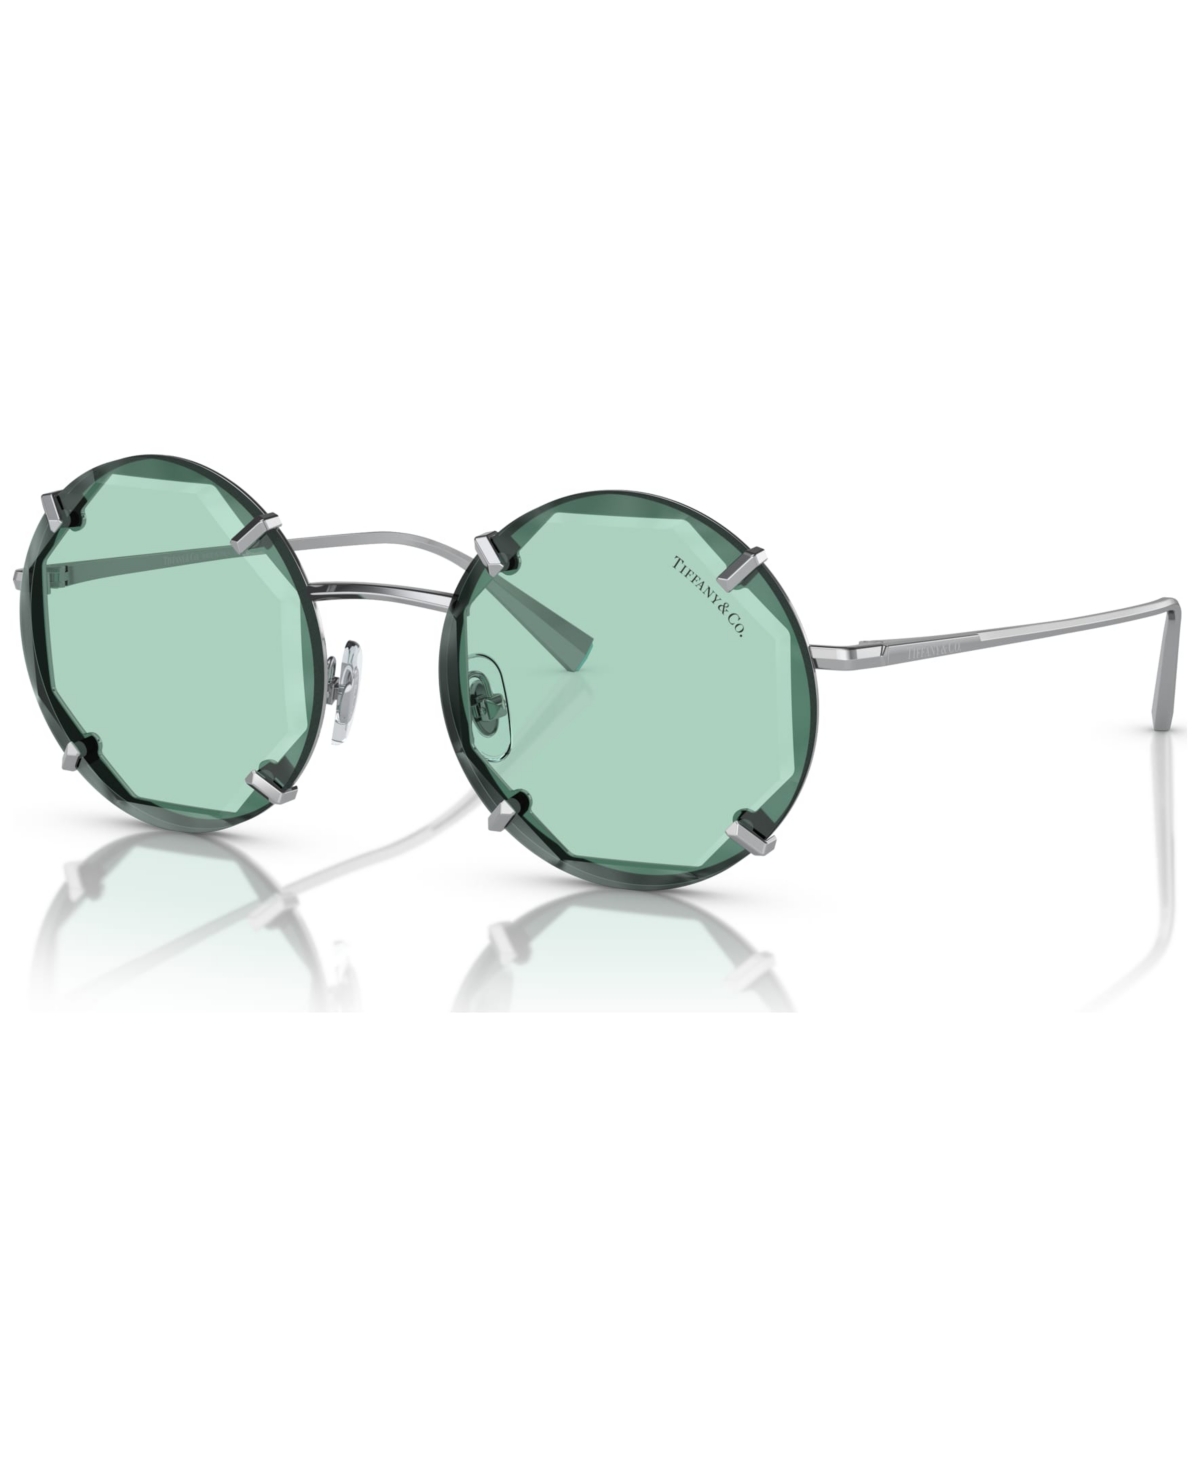 Tiffany & Co Women's 52 Sunglasses, Tf3091 In Silver-tone